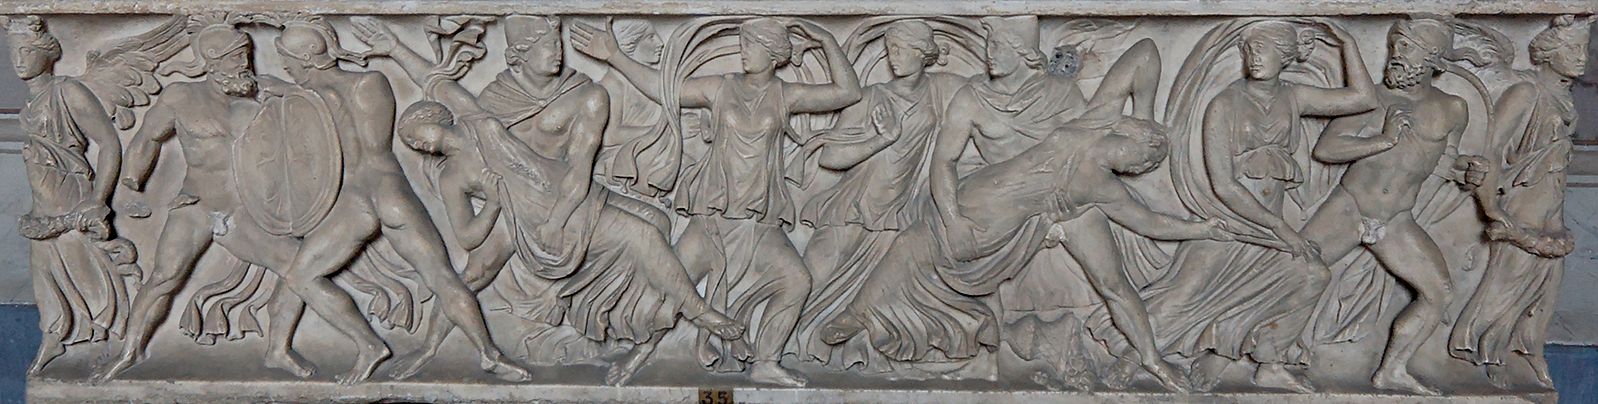 combat 160 av. J.-C. combats Castor et Pollux enlevant Phoebe et Hilaire, filles de Leucippe, Vatican_Inv2796 bis